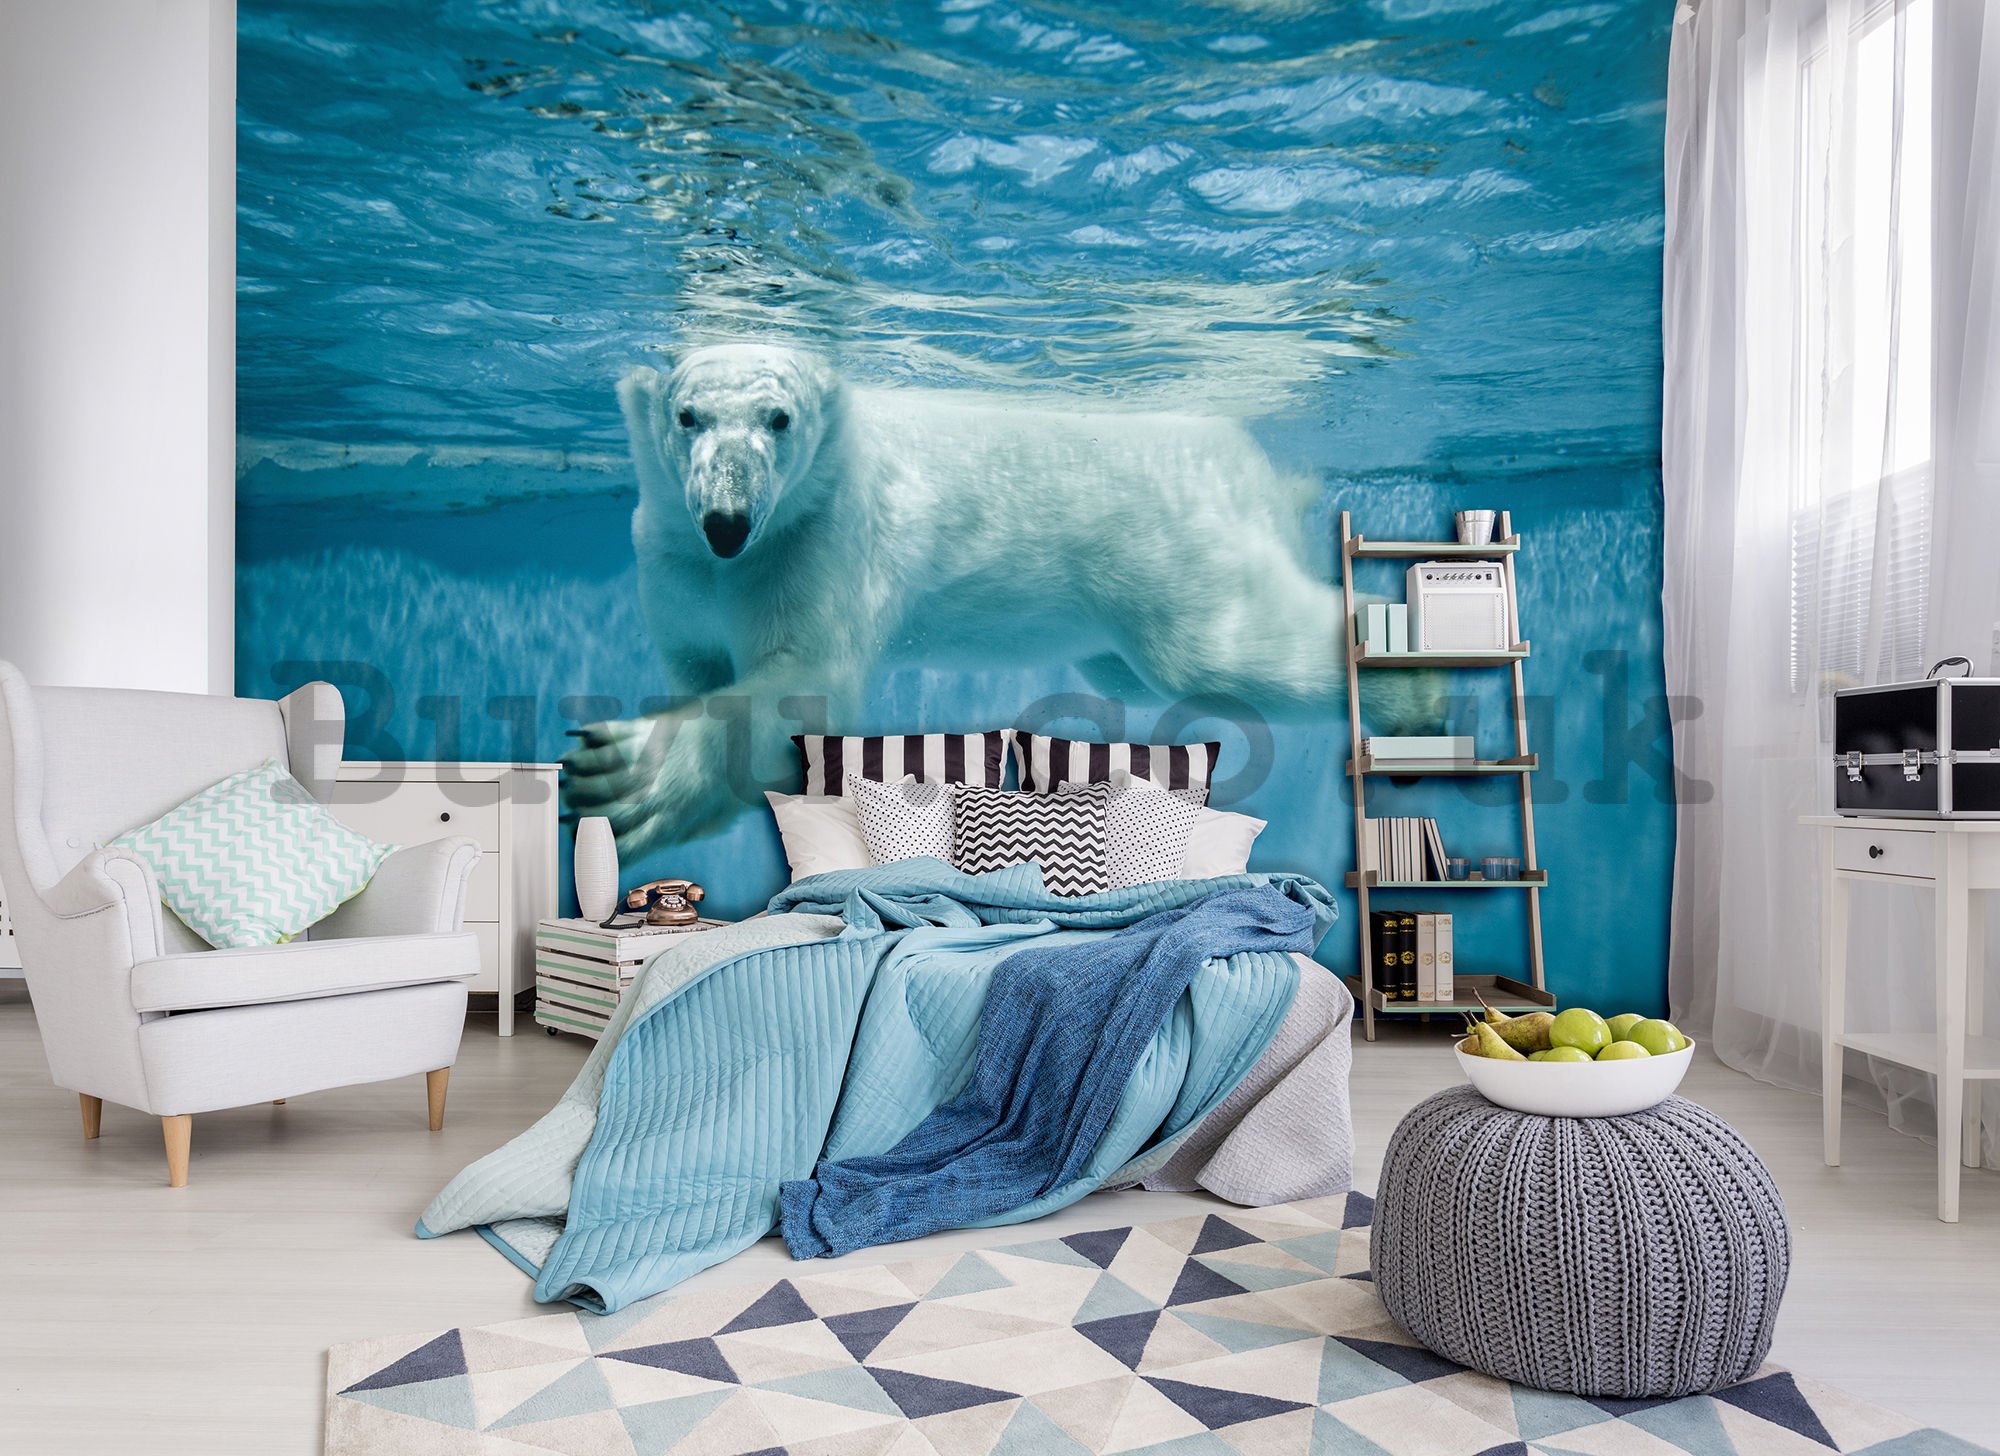 Wall mural vlies: Polar Bear (1) - 184x254 cm